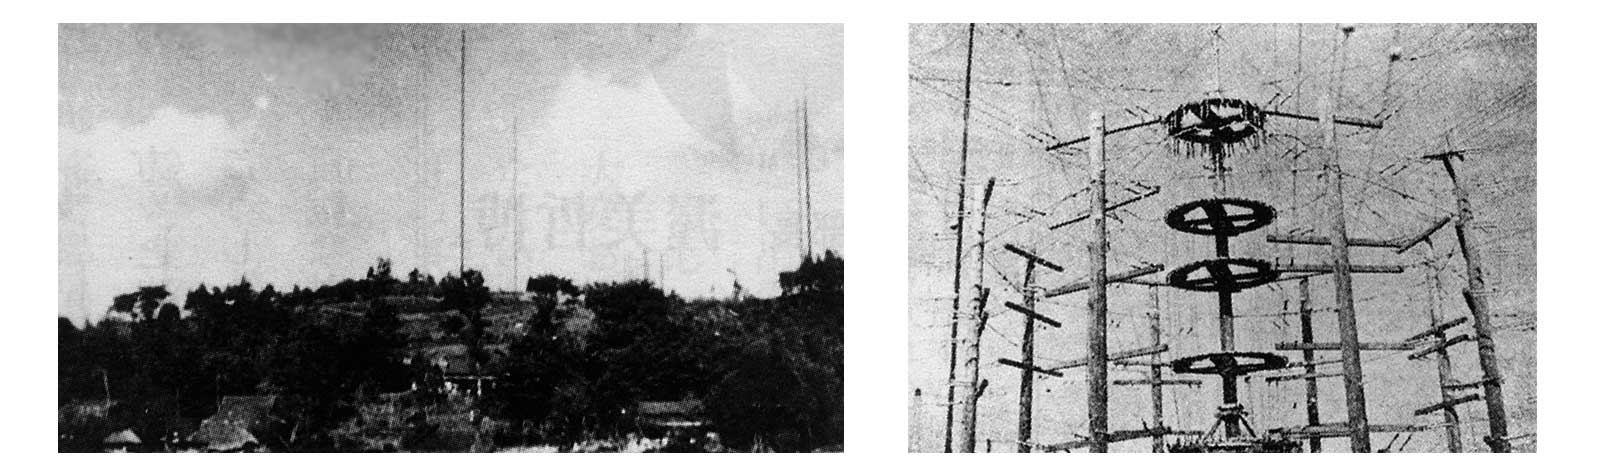 左は1945（昭和20）年当時の多摩送信所遠景。右は多摩送信所の円筒型送信塔。木造の組み立て塔によって空中線を支えている。送信設備や宿舎を中心とする5棟からなる局舎が点在し、その北・東・南の尾根の山林中に6基の発信用アンテナを張り巡らせていた。